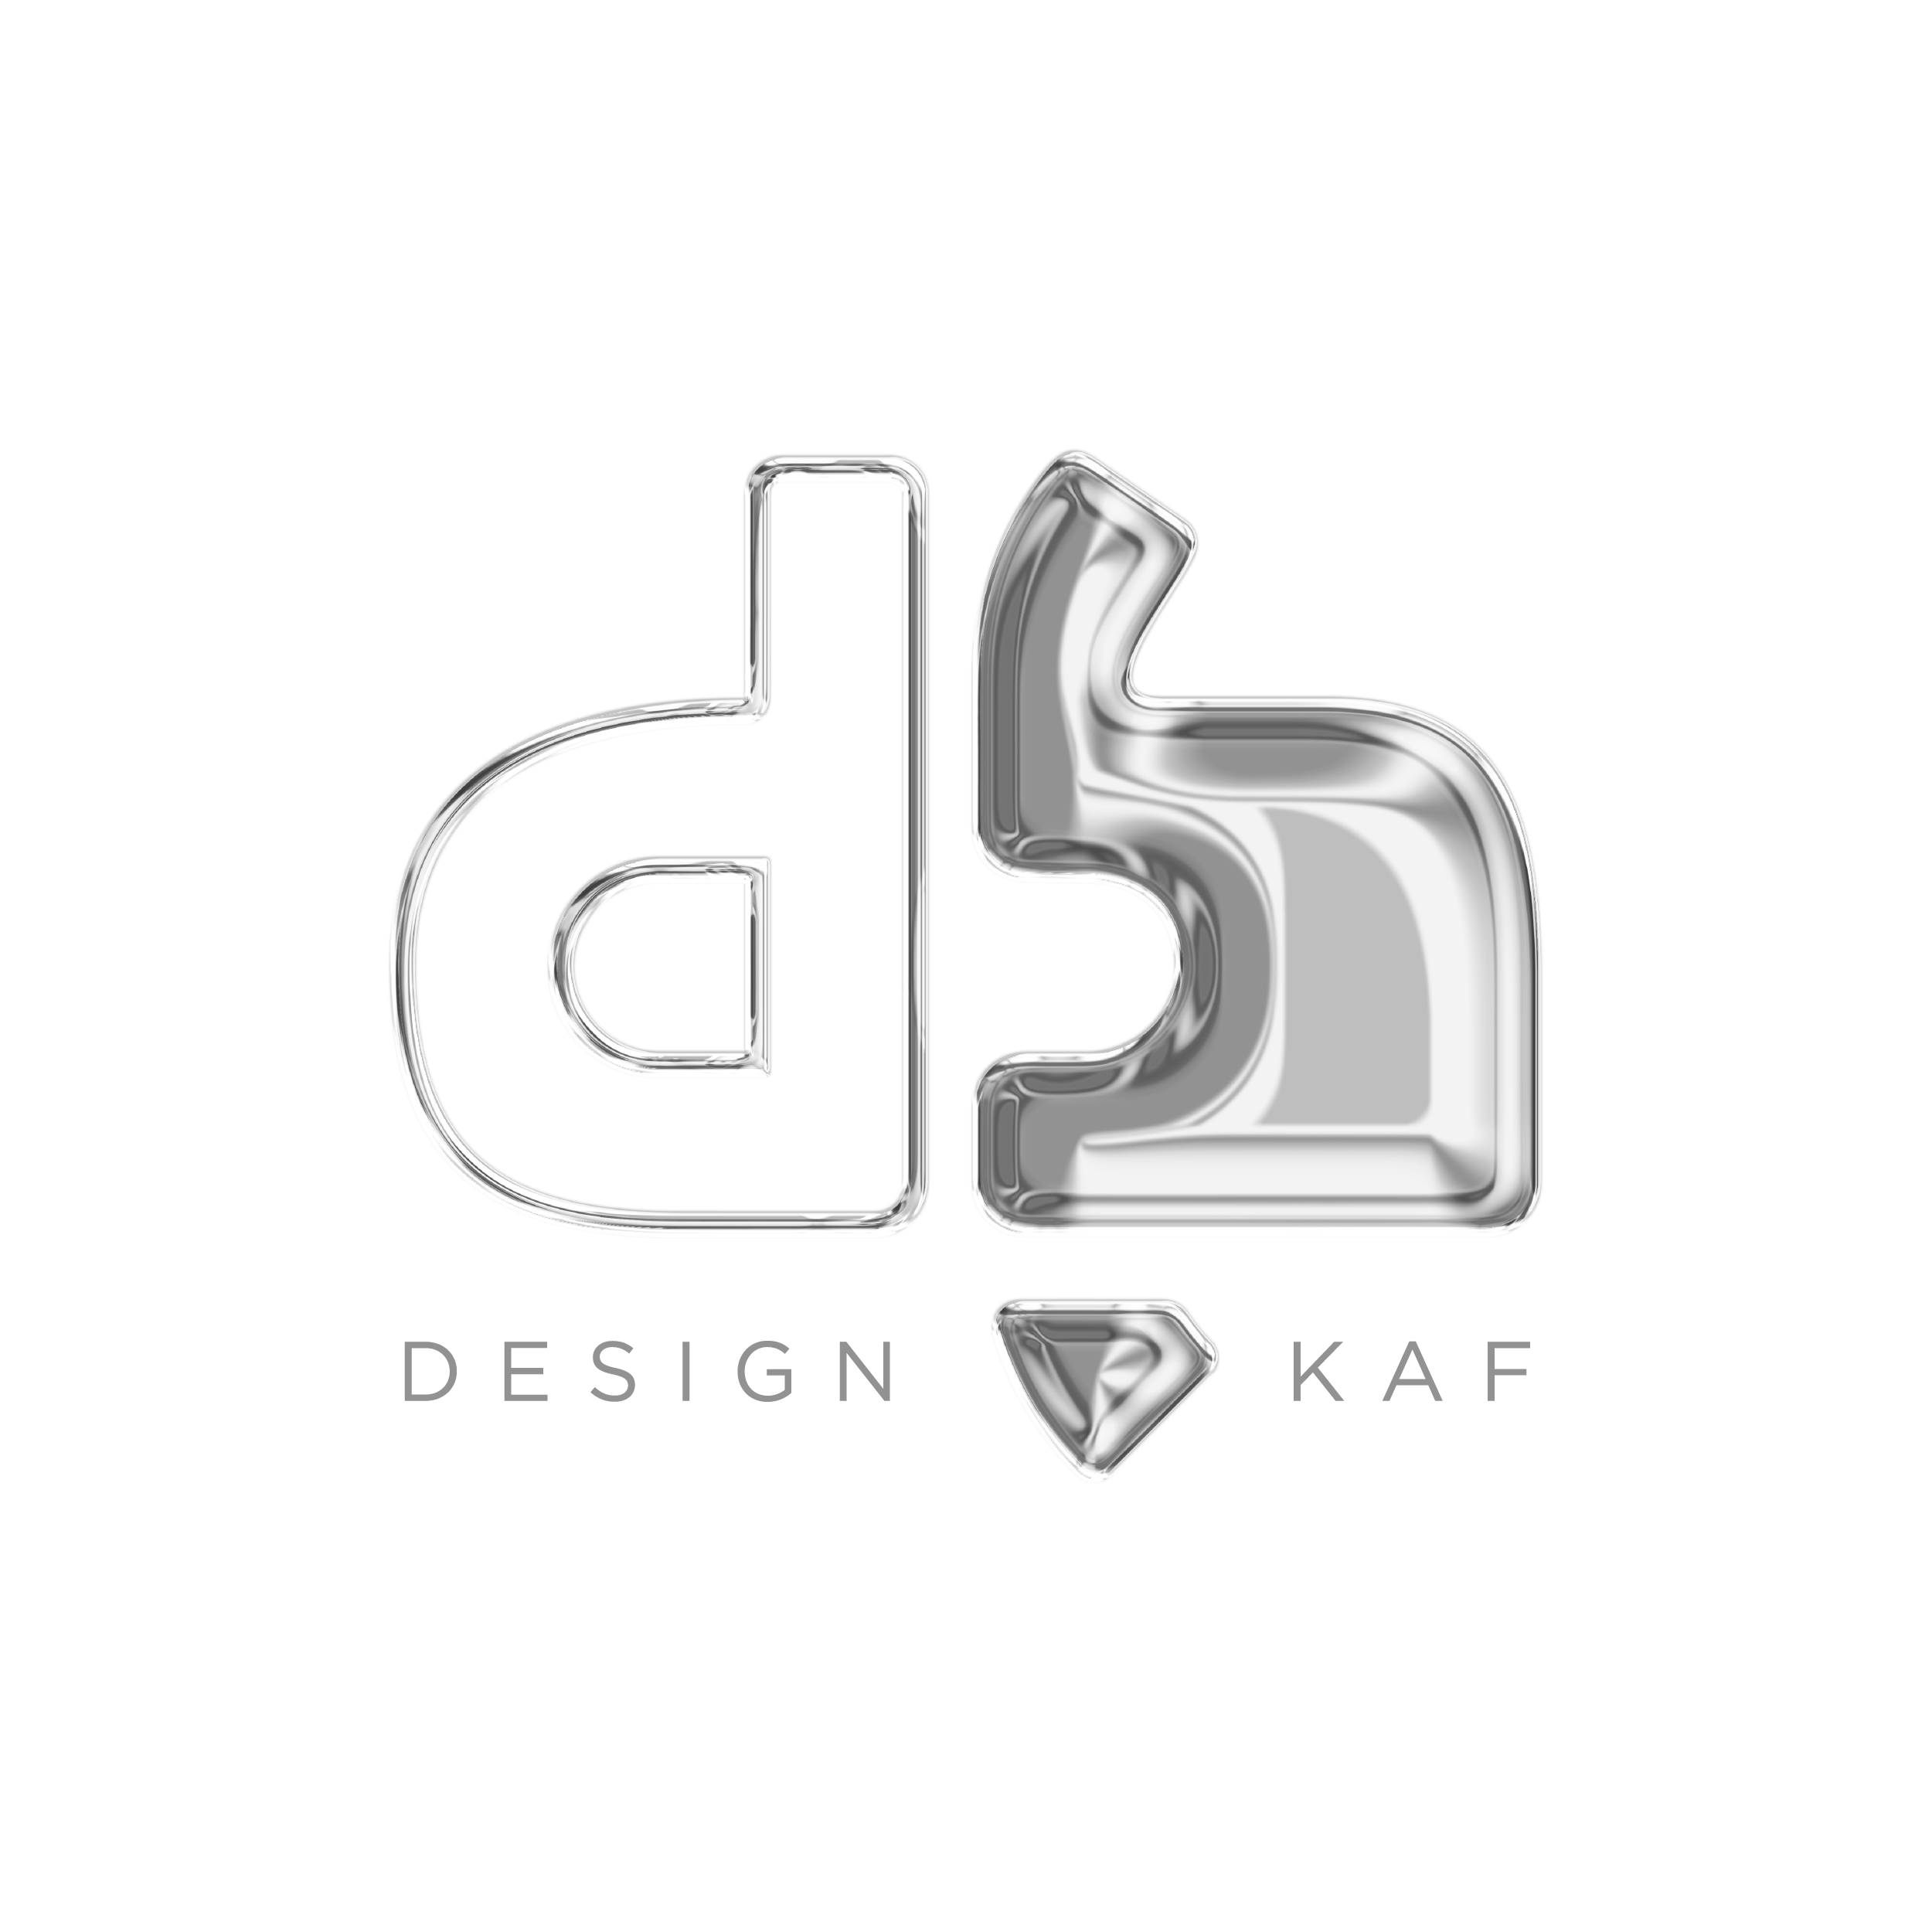 Design Kaf